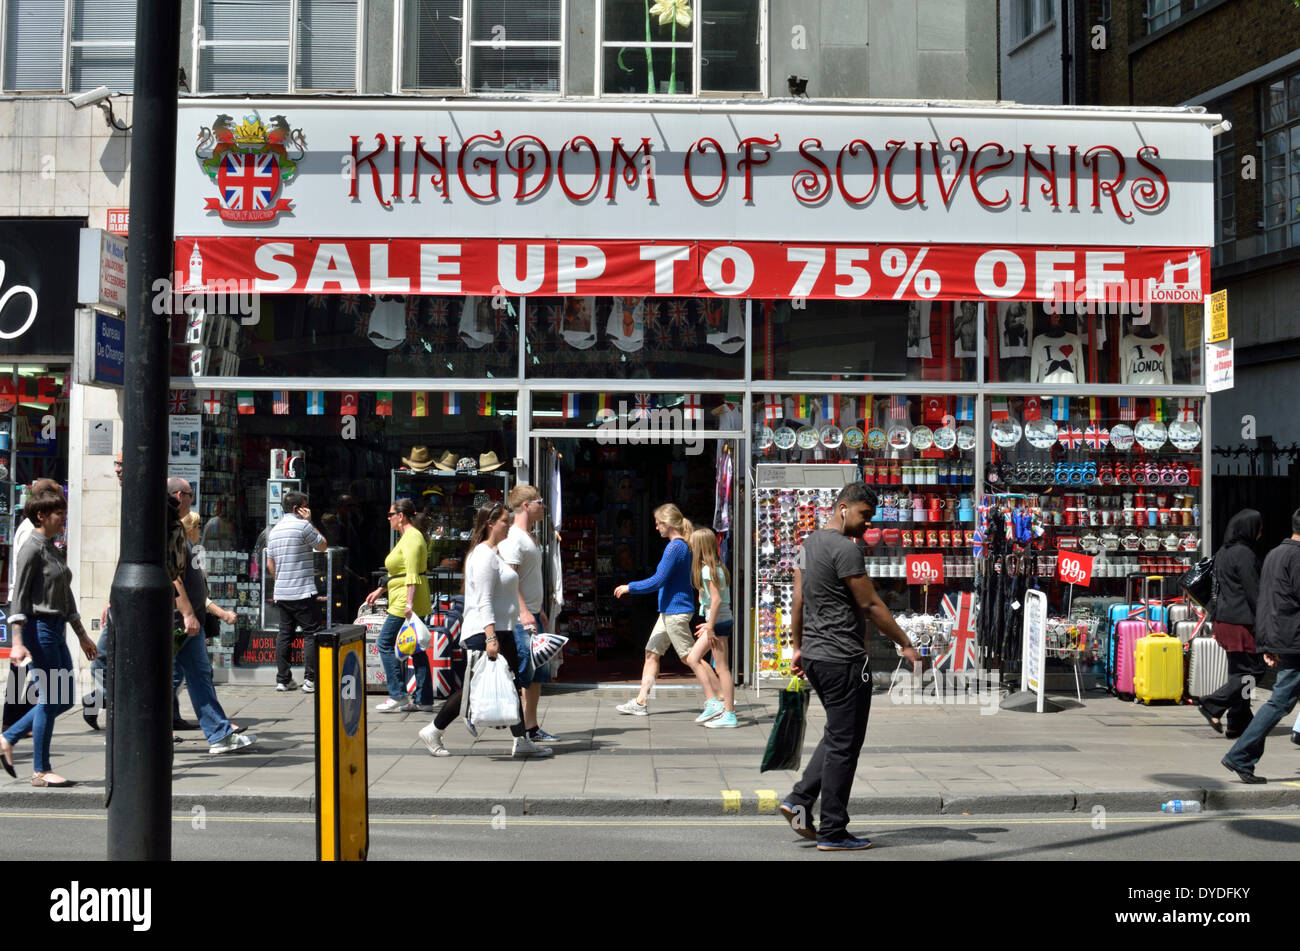 Kingdom of Souvenirs tourist souvenir shop. Stock Photo